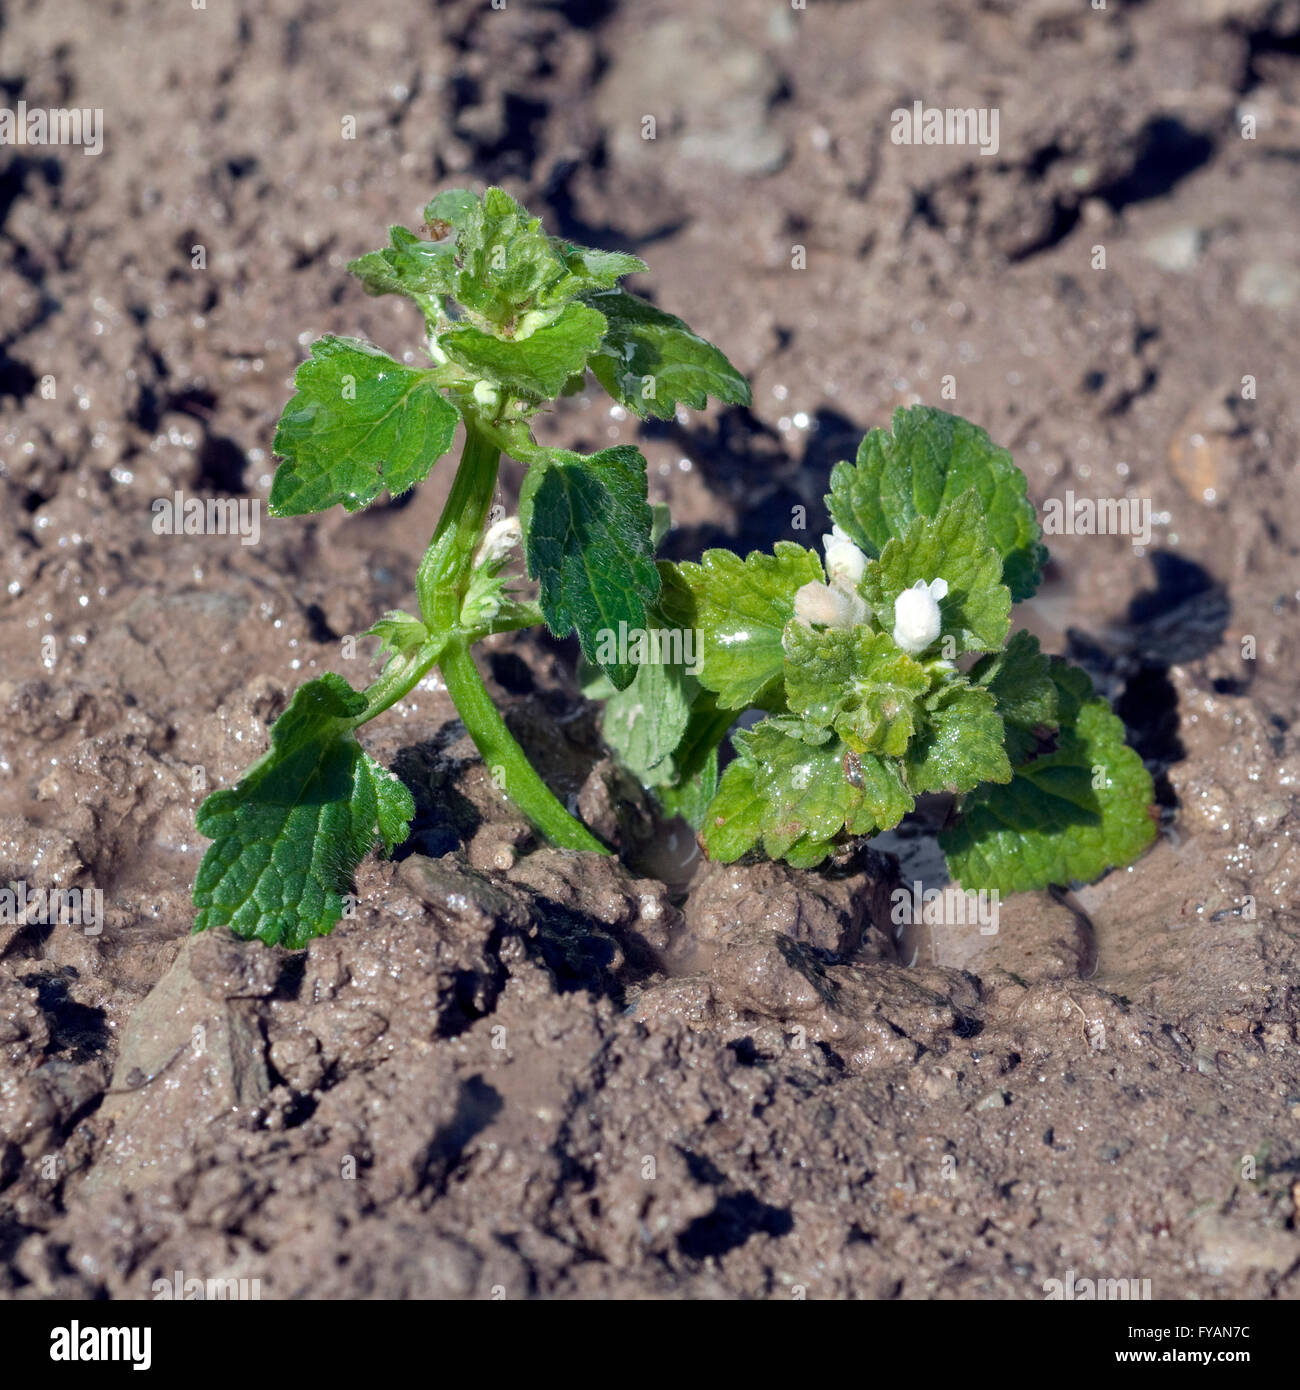 Weisse Taubnessel, ist eine Heilpflanze und Arzneipflanze, Wildpflanze Foto Stock